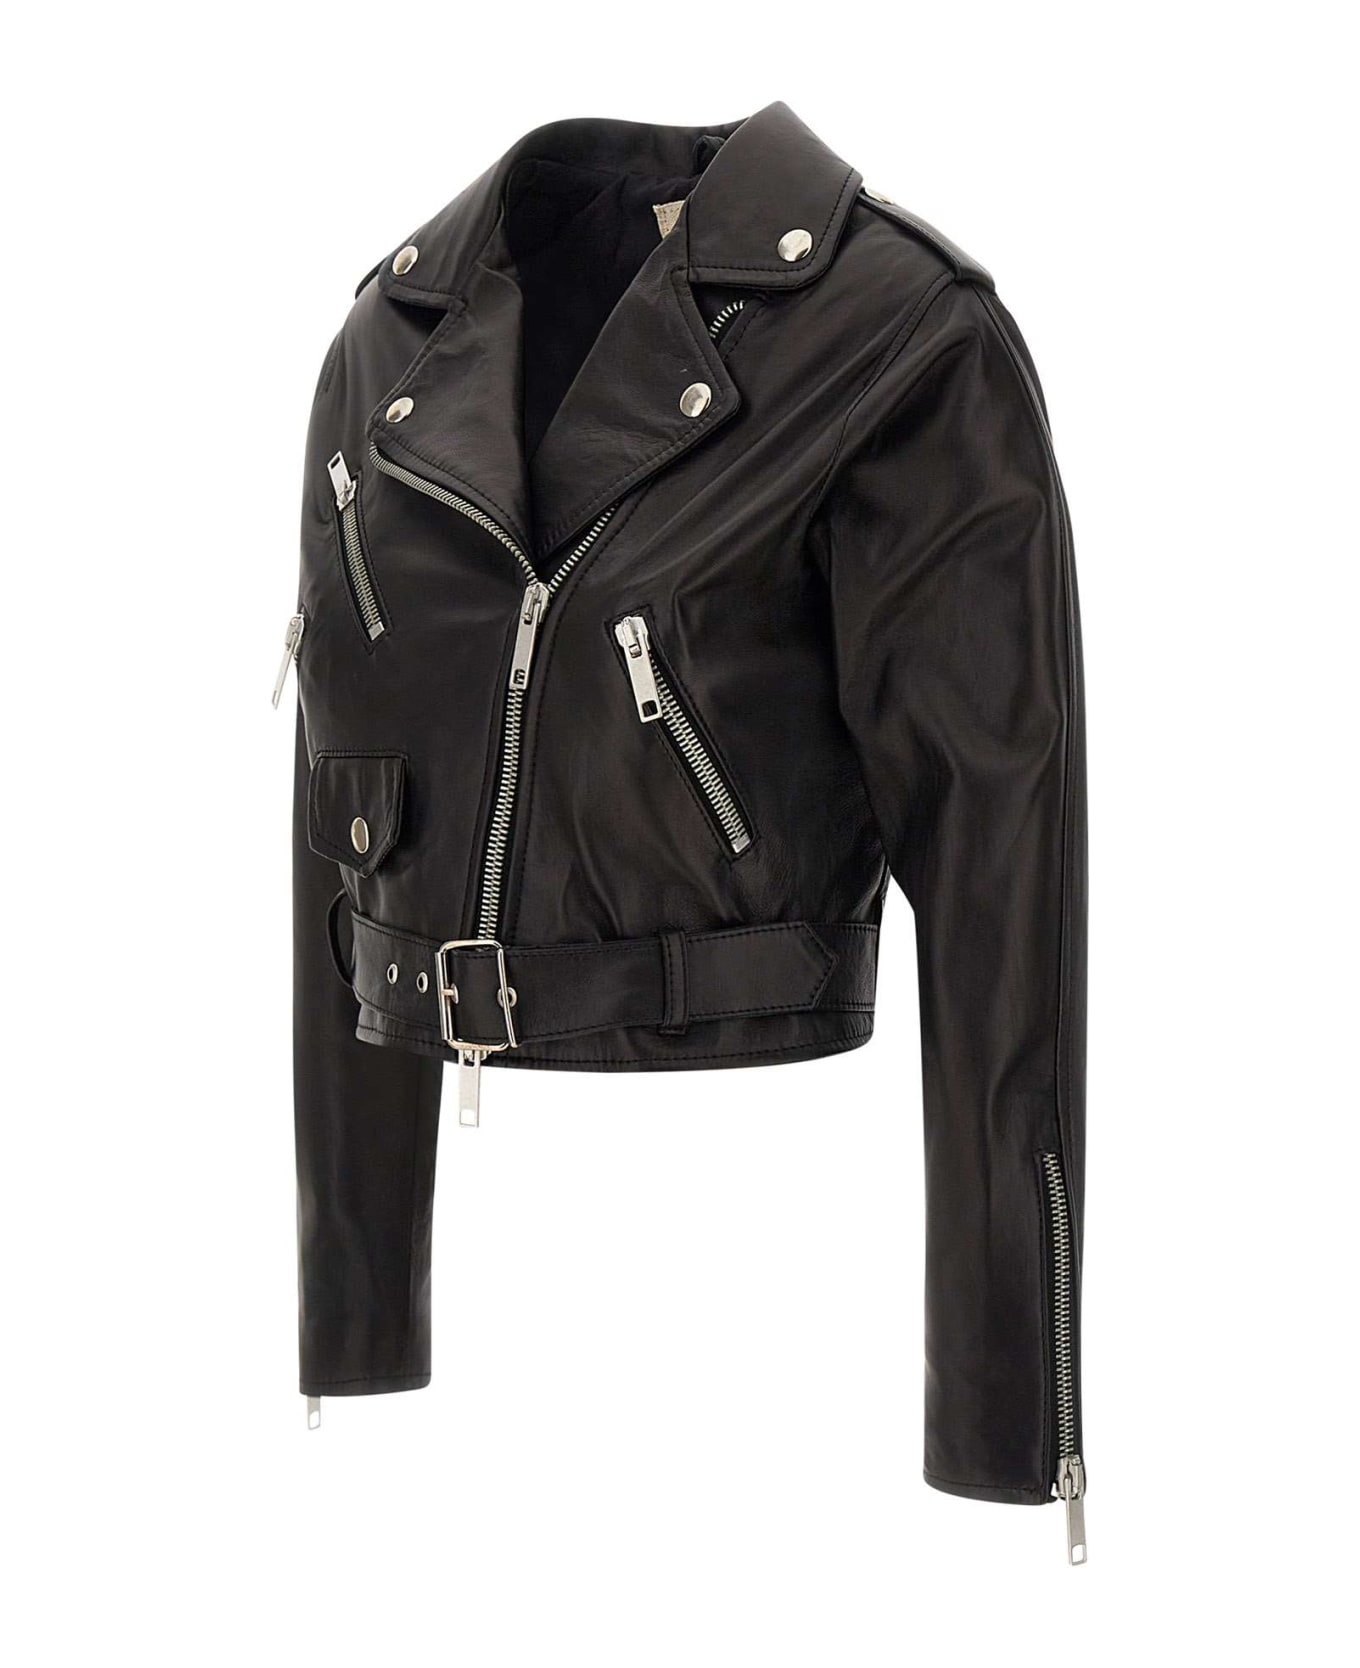 Mono "lory" Leather Jacket - BLACK